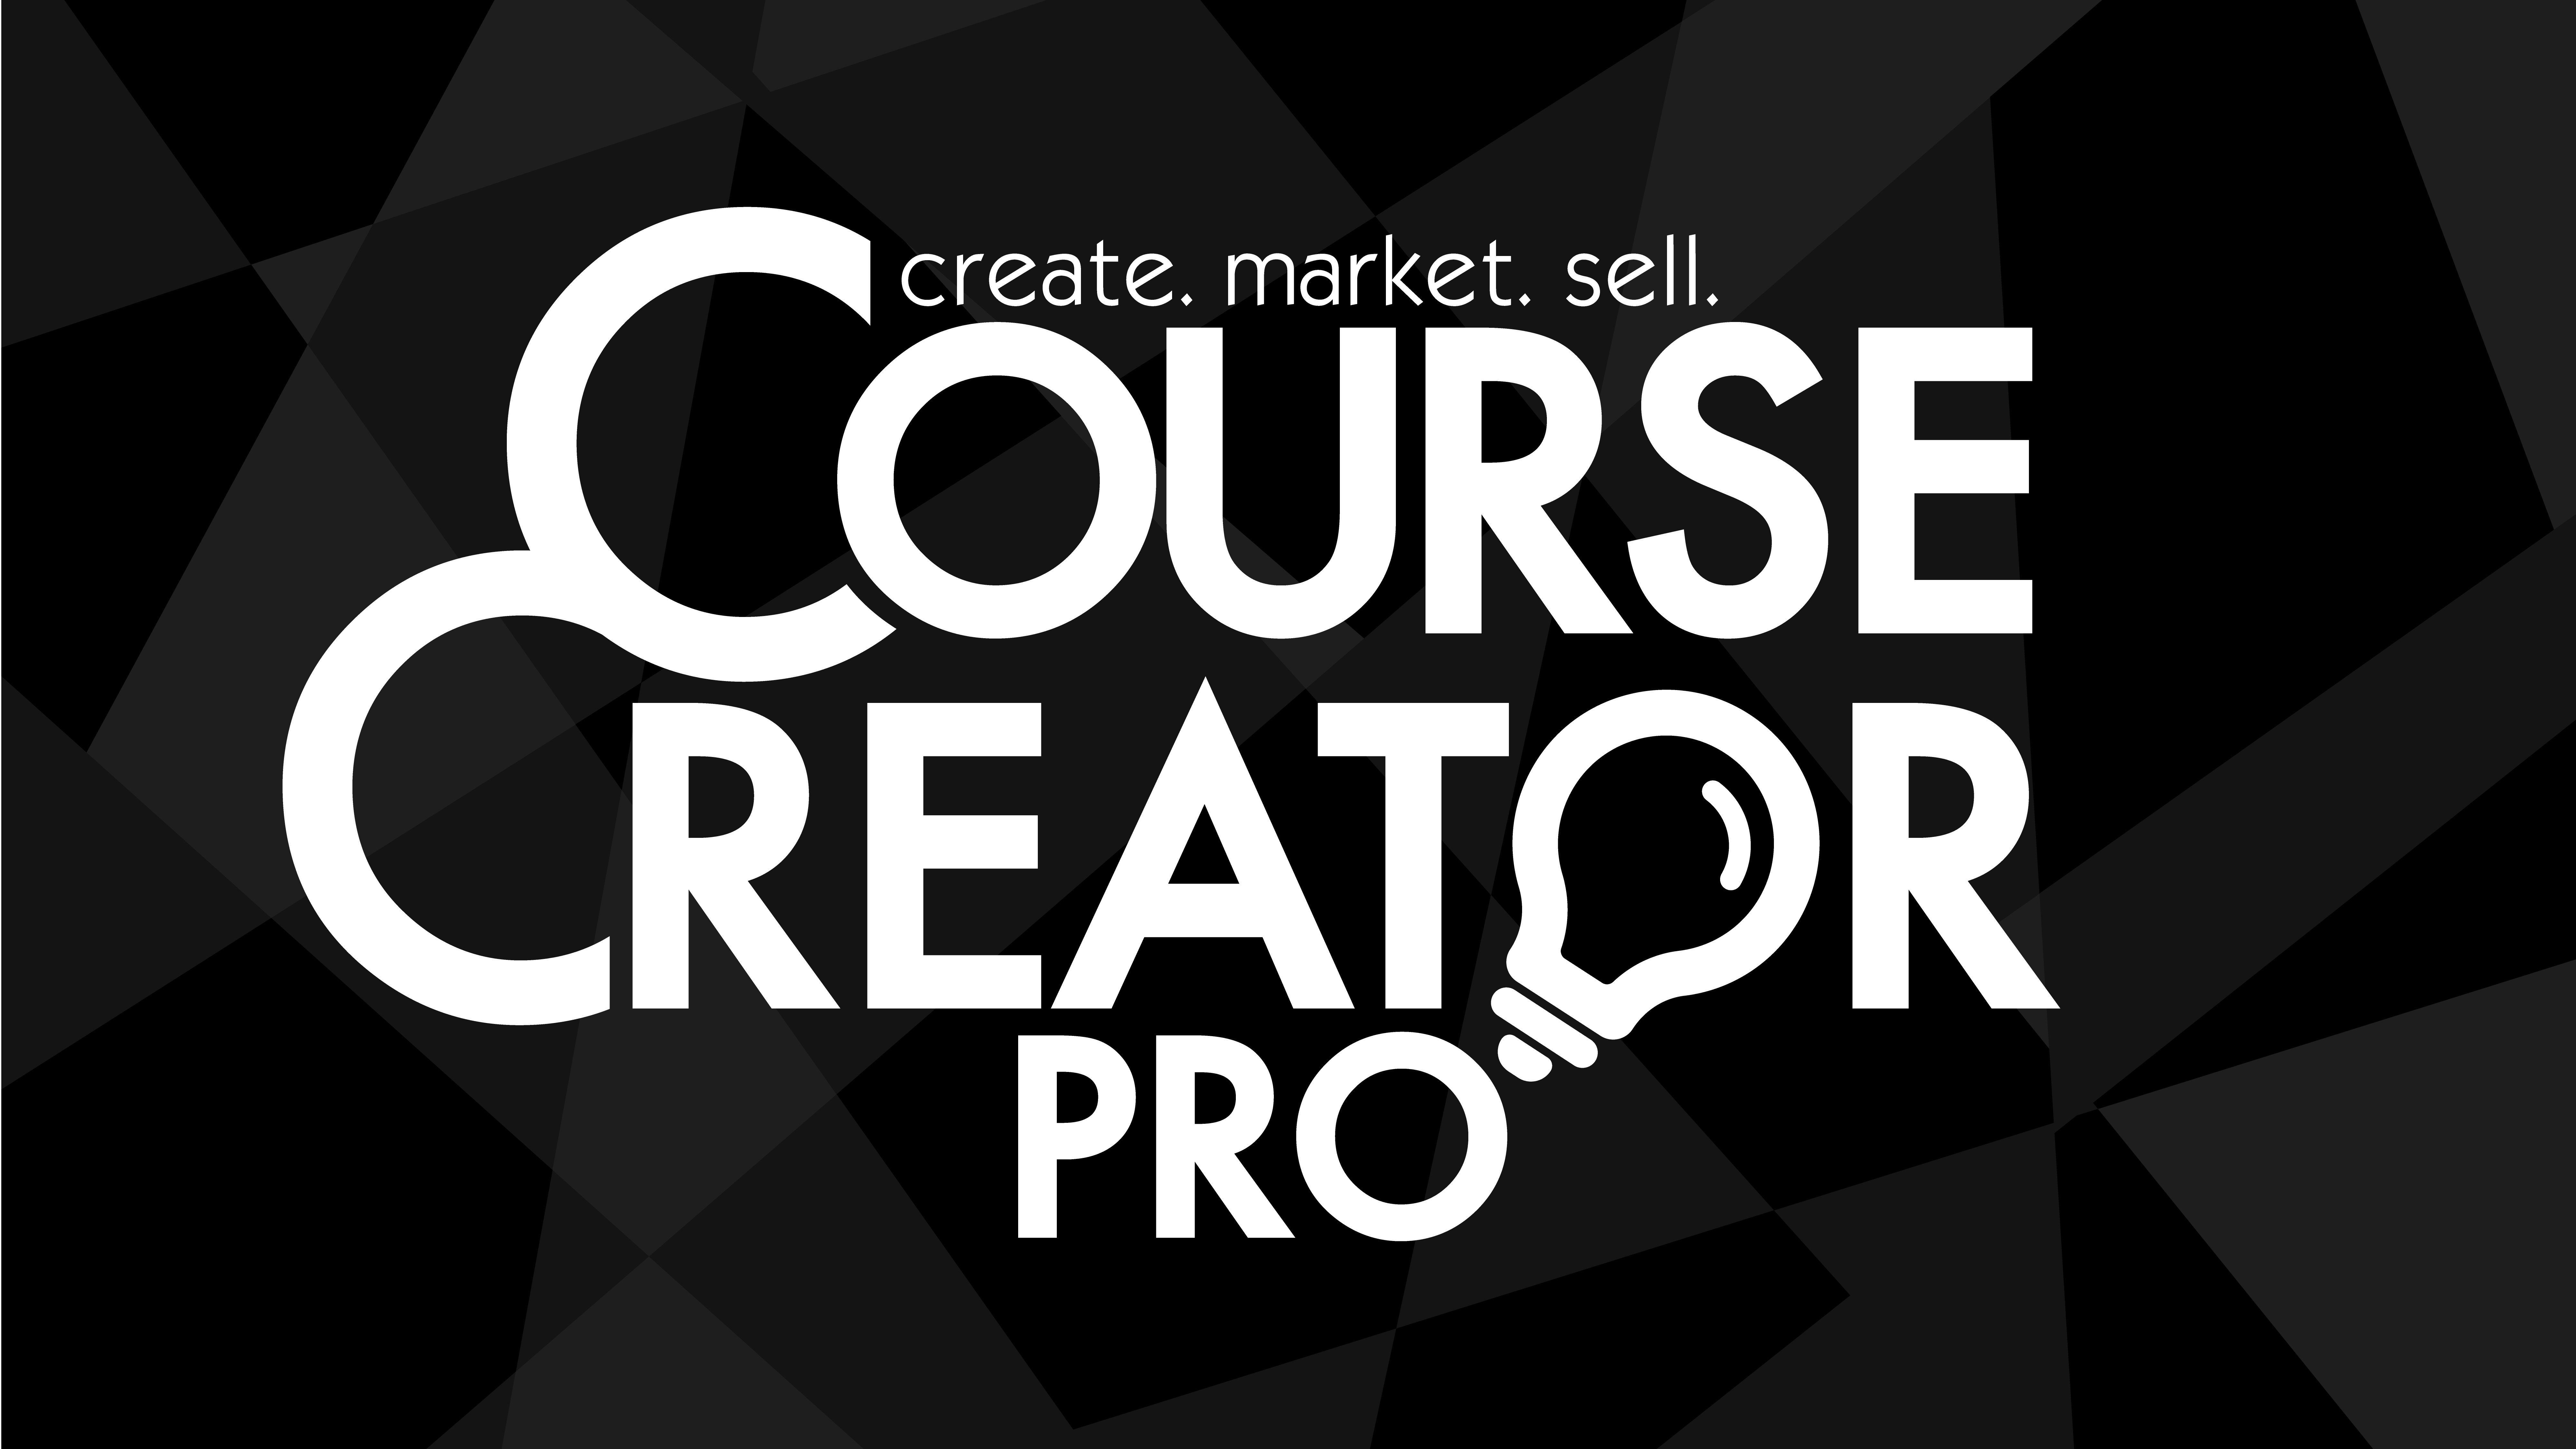 Course Creator Pro